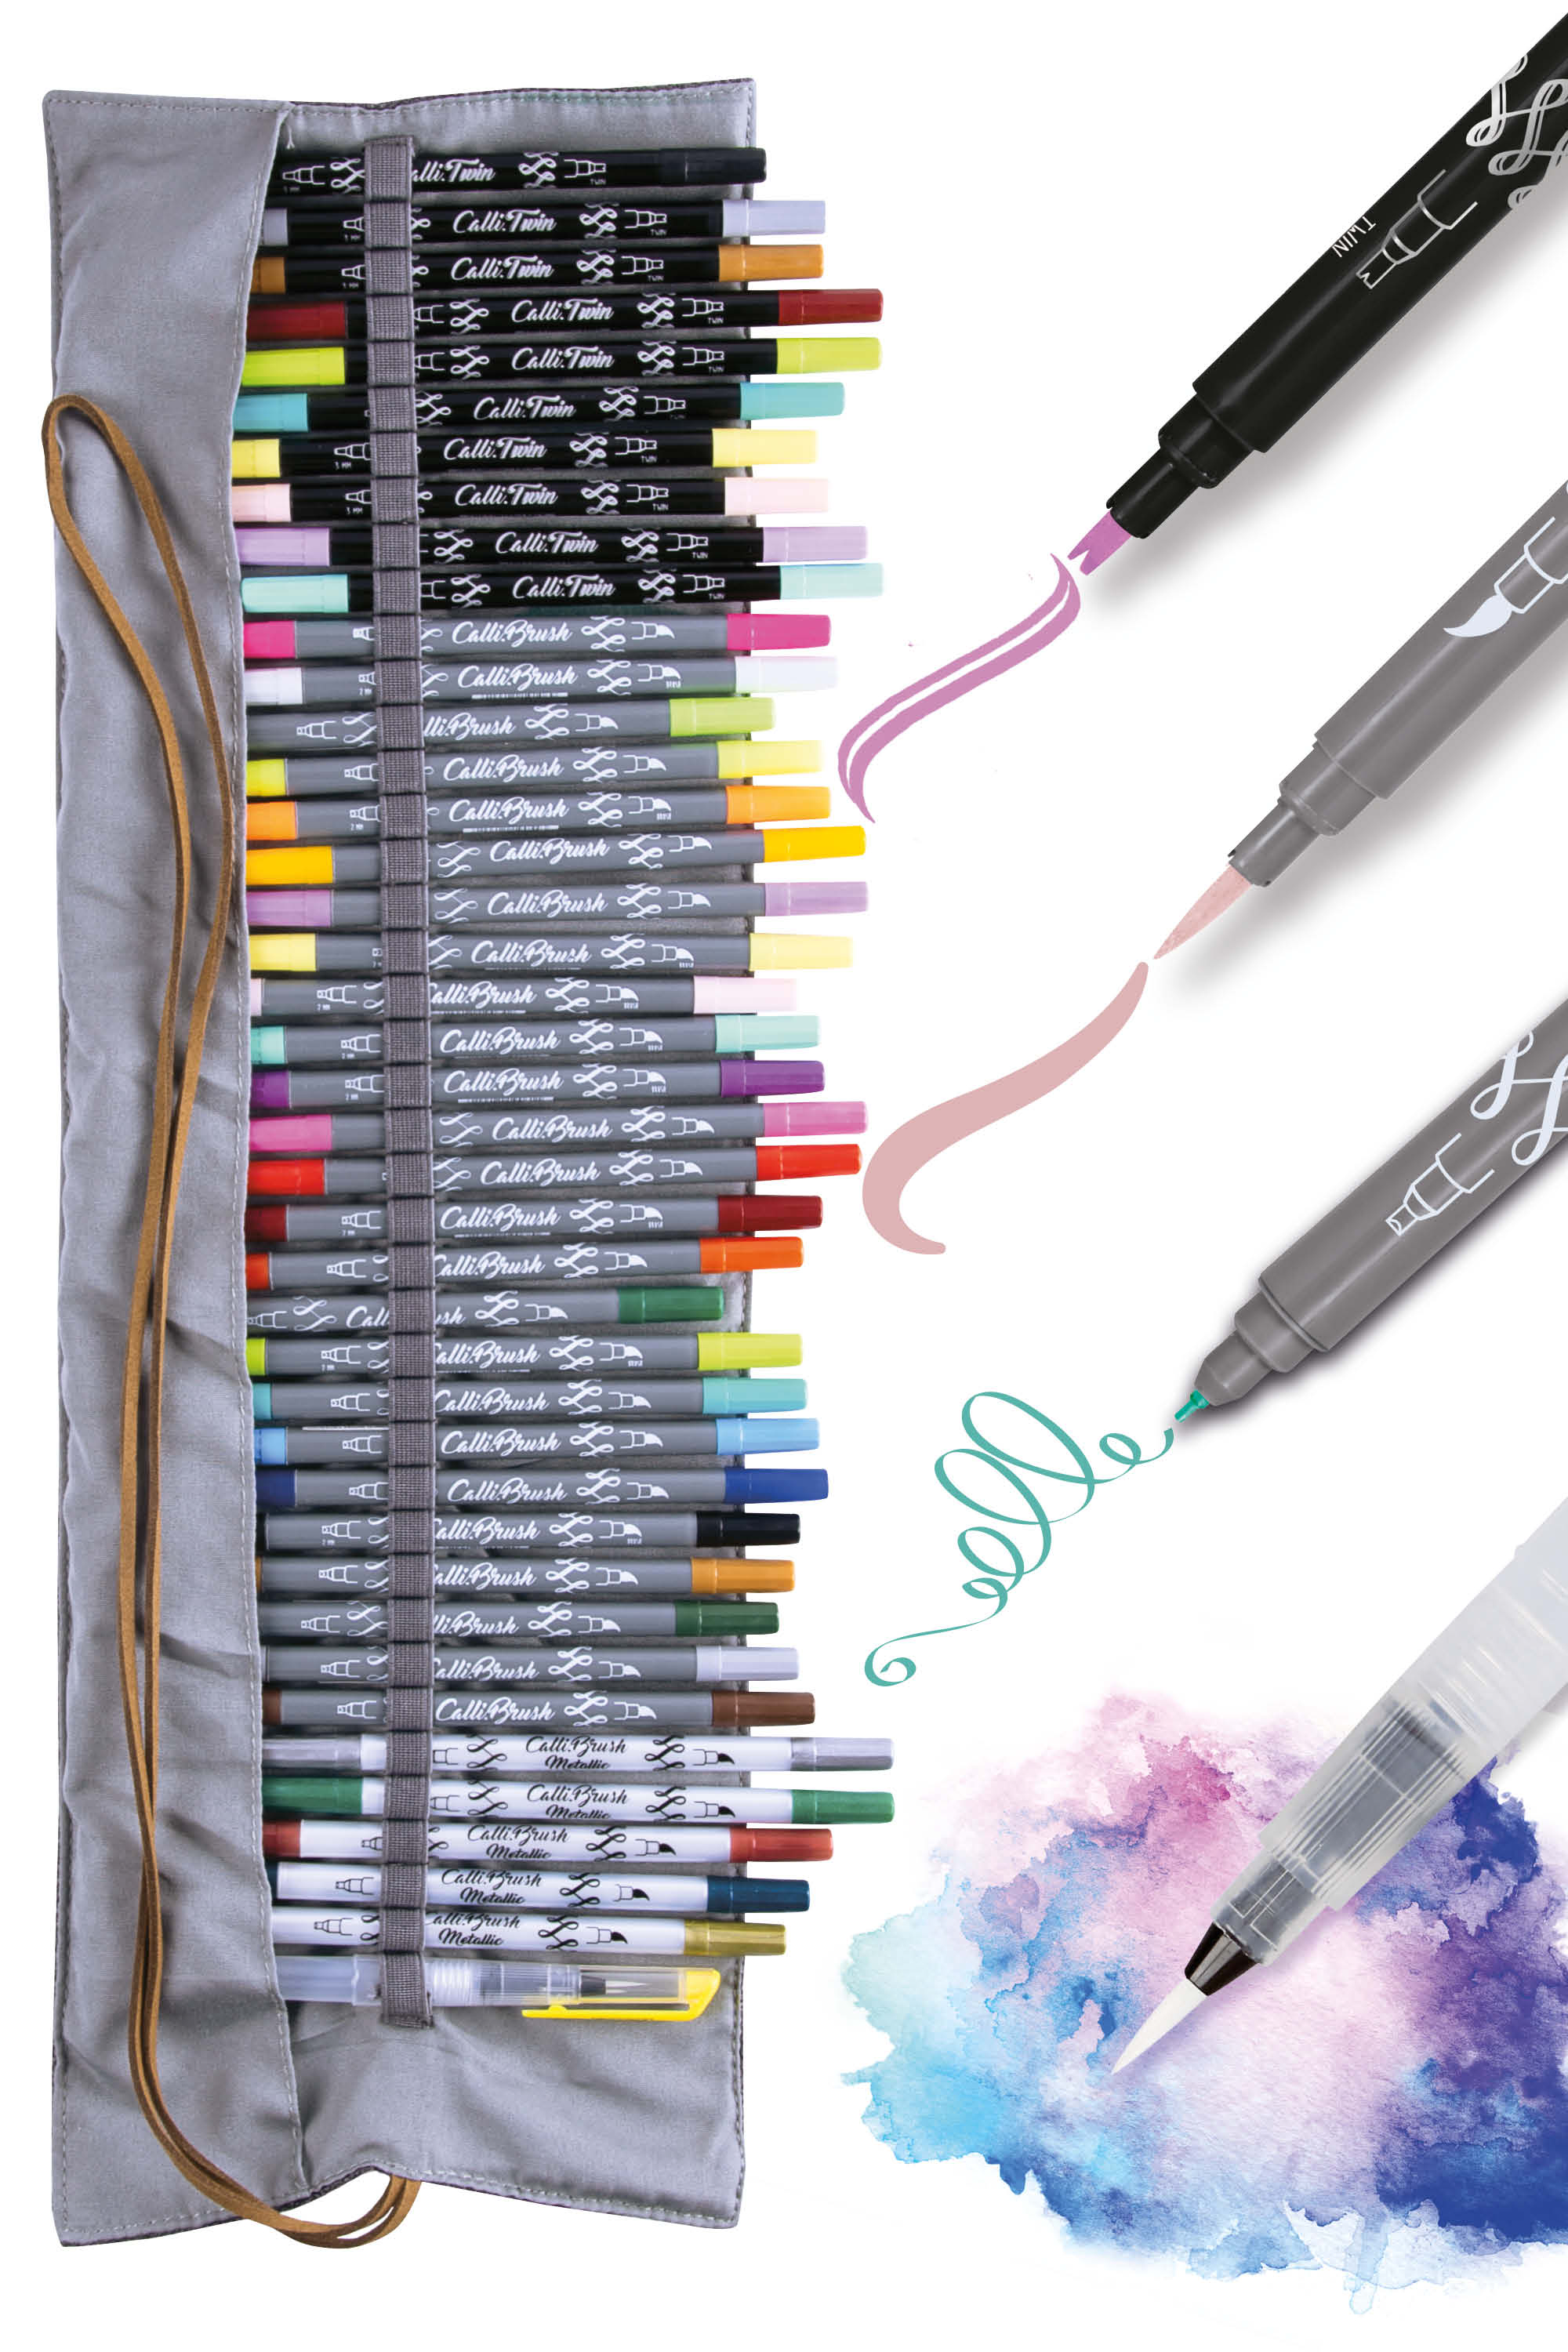 Stifterolle mit Brush Pens - Calli Brush und Calli Twin